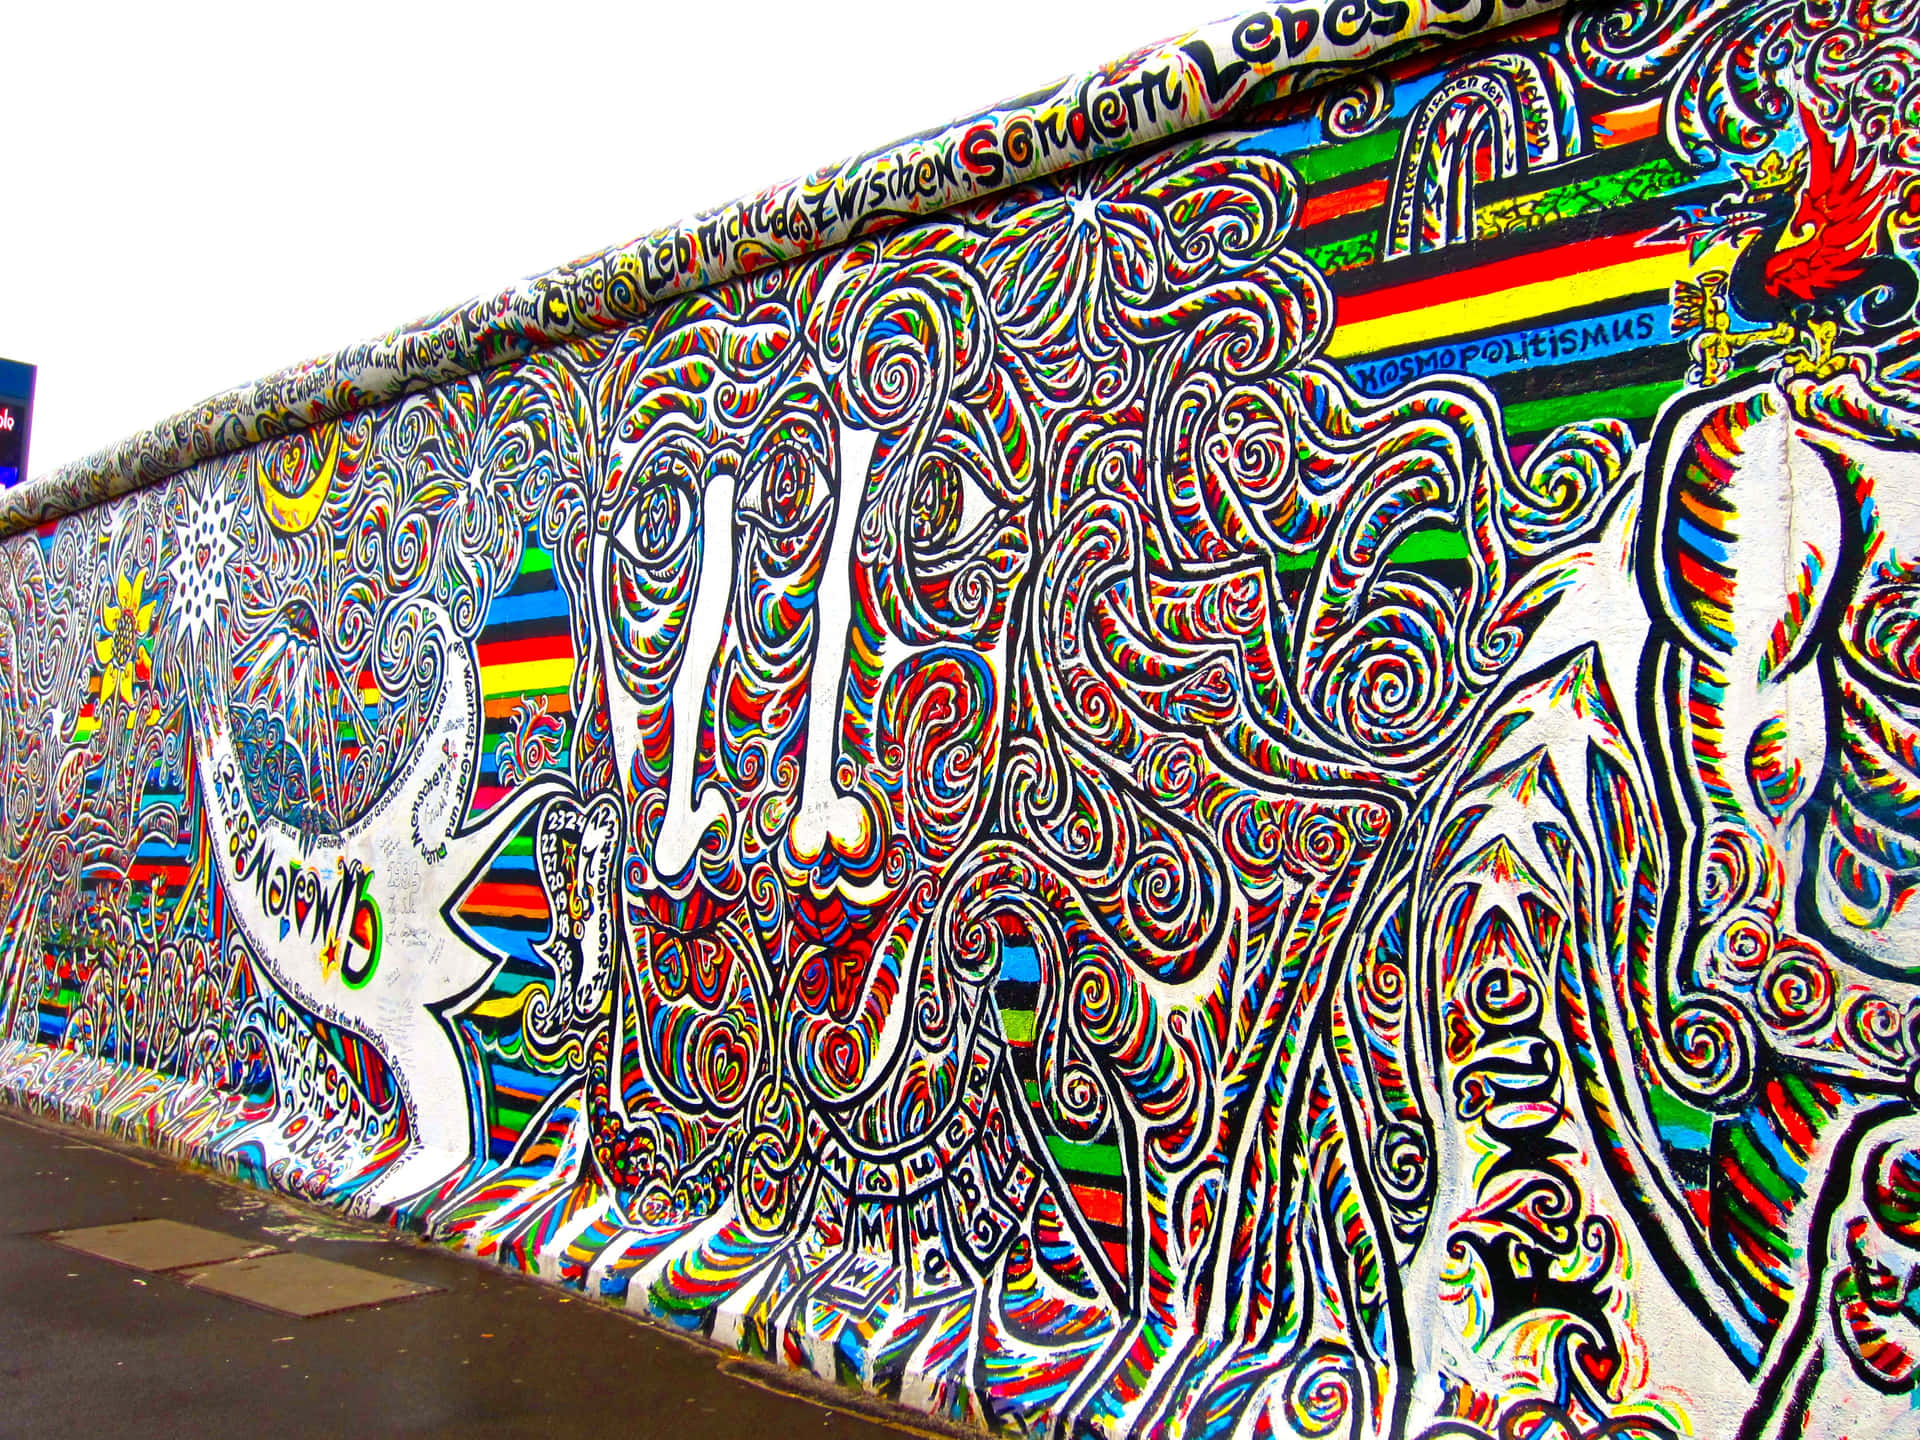 Berlin Wall East Side Gallery Background